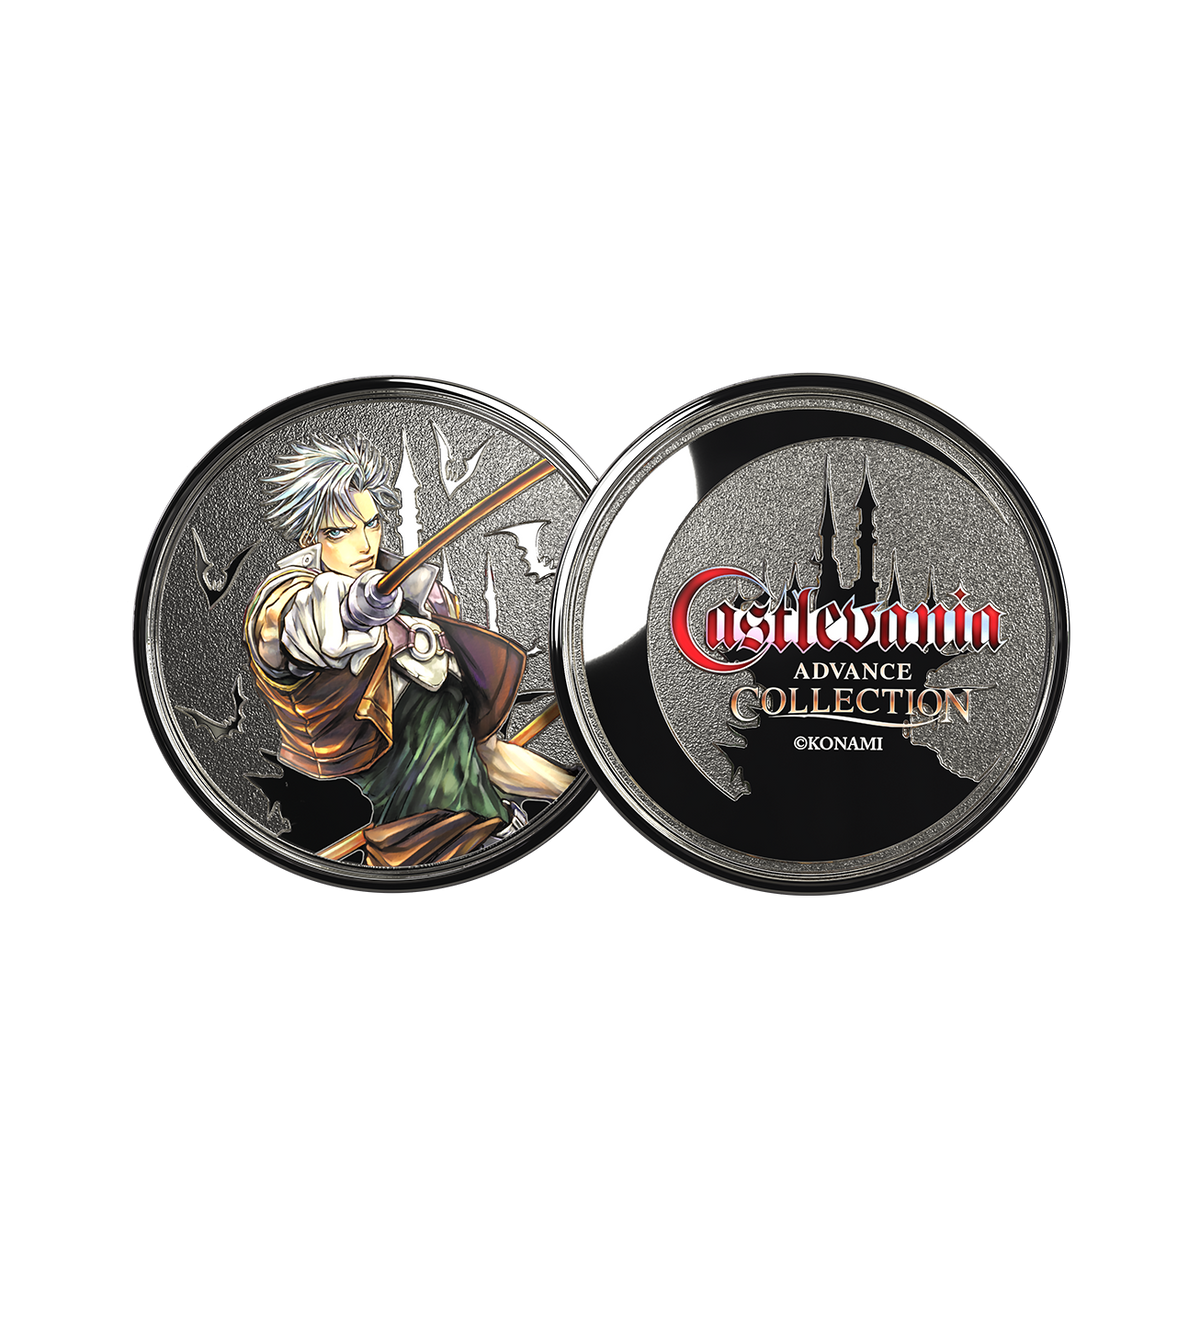 Castlevania Advance Collection Collectible Coin